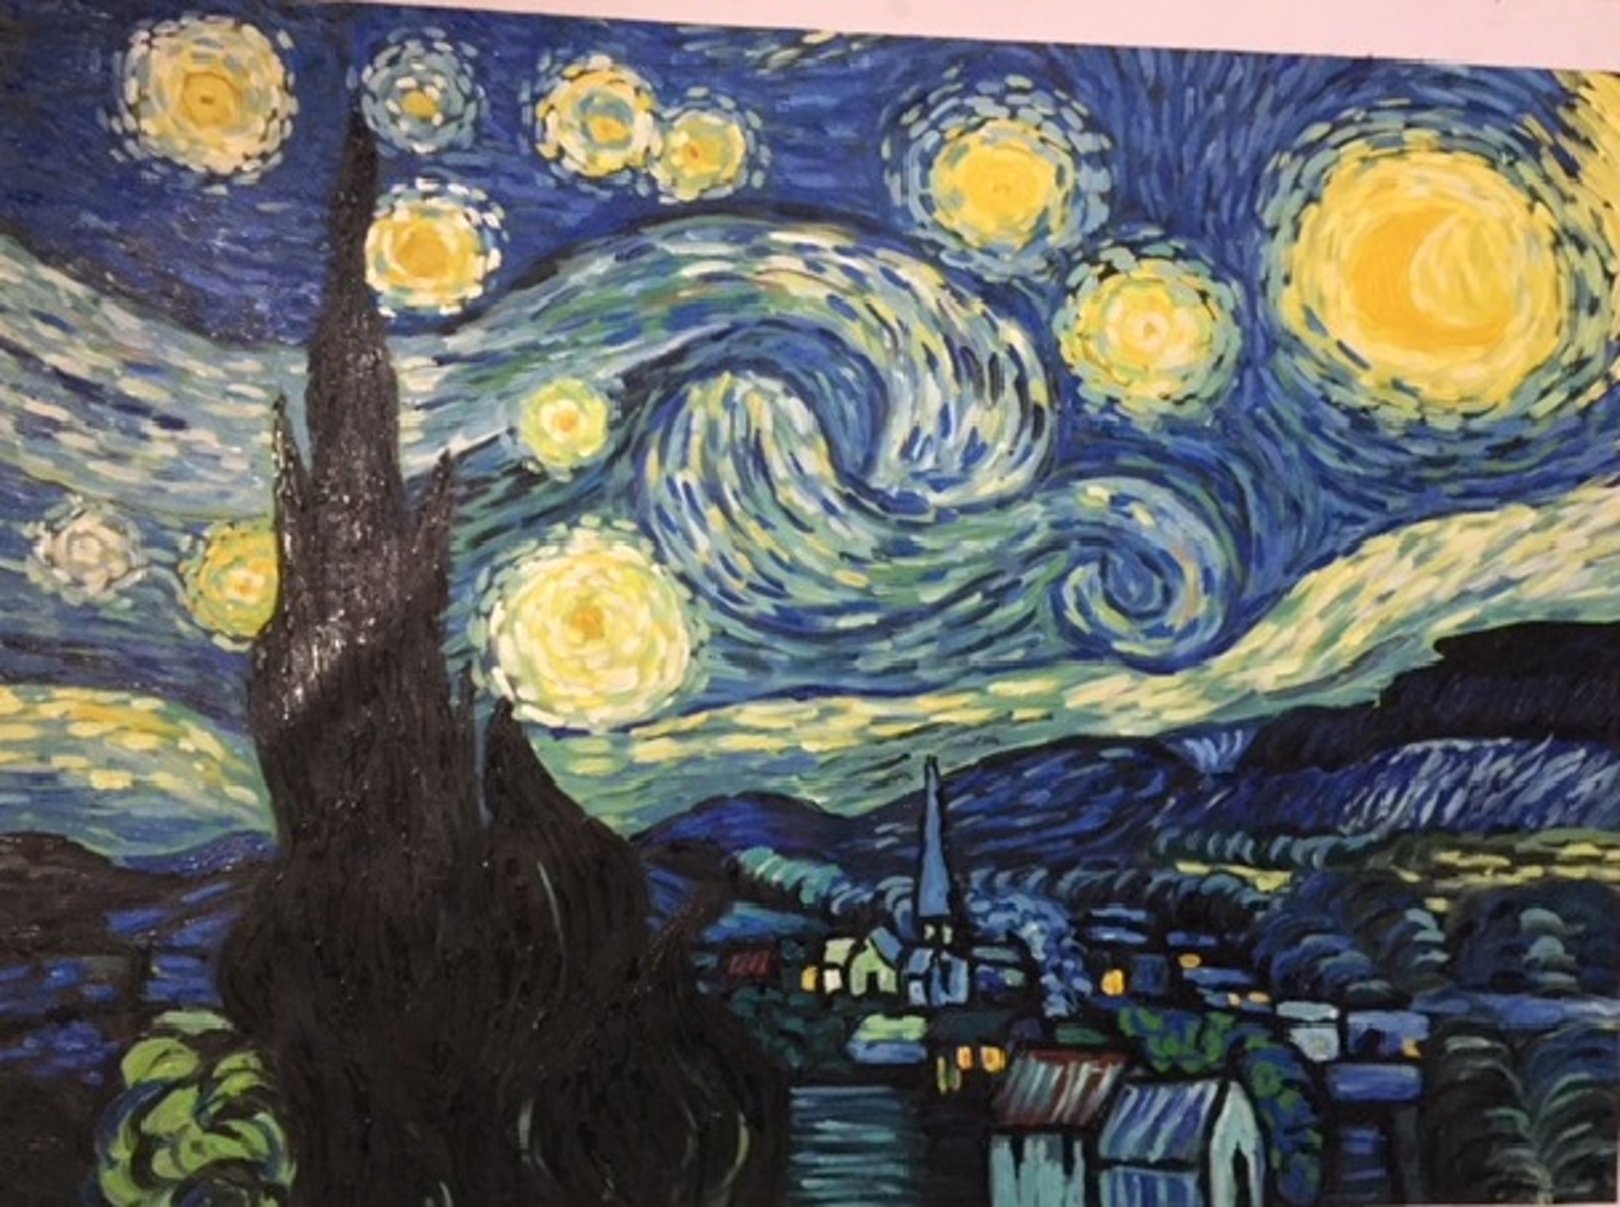 Quadro Notte Stellata Di Van Gogh Falso D Autore 80x113 Impressionisti 2